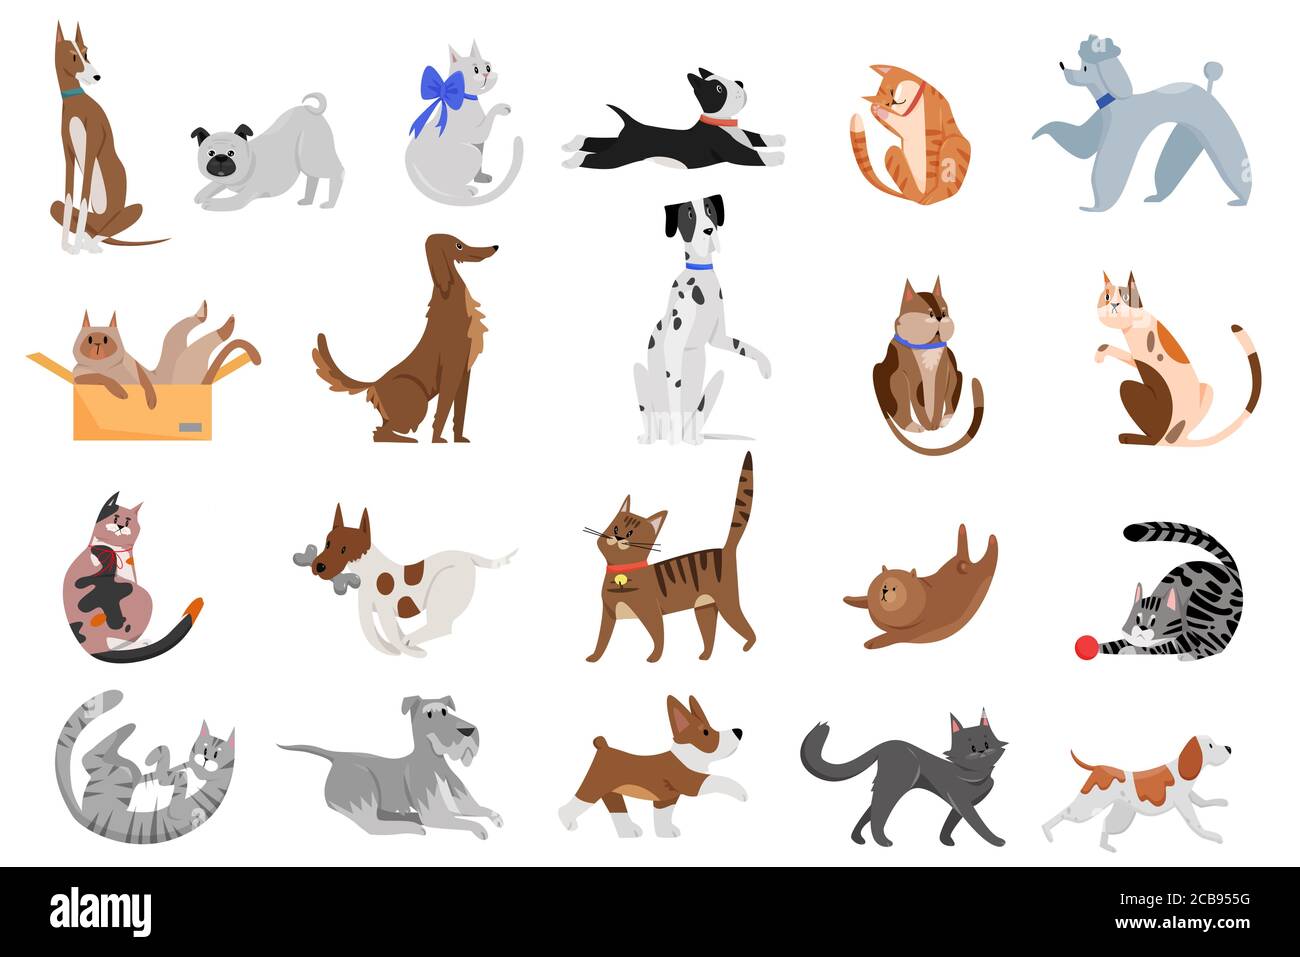 Nette lustige Cartoon Haustiere Charaktere flache Vektor Illustration. Verschiedene Rassen von Katzen und Hunden gehen, spielen und posieren. Stock Vektor